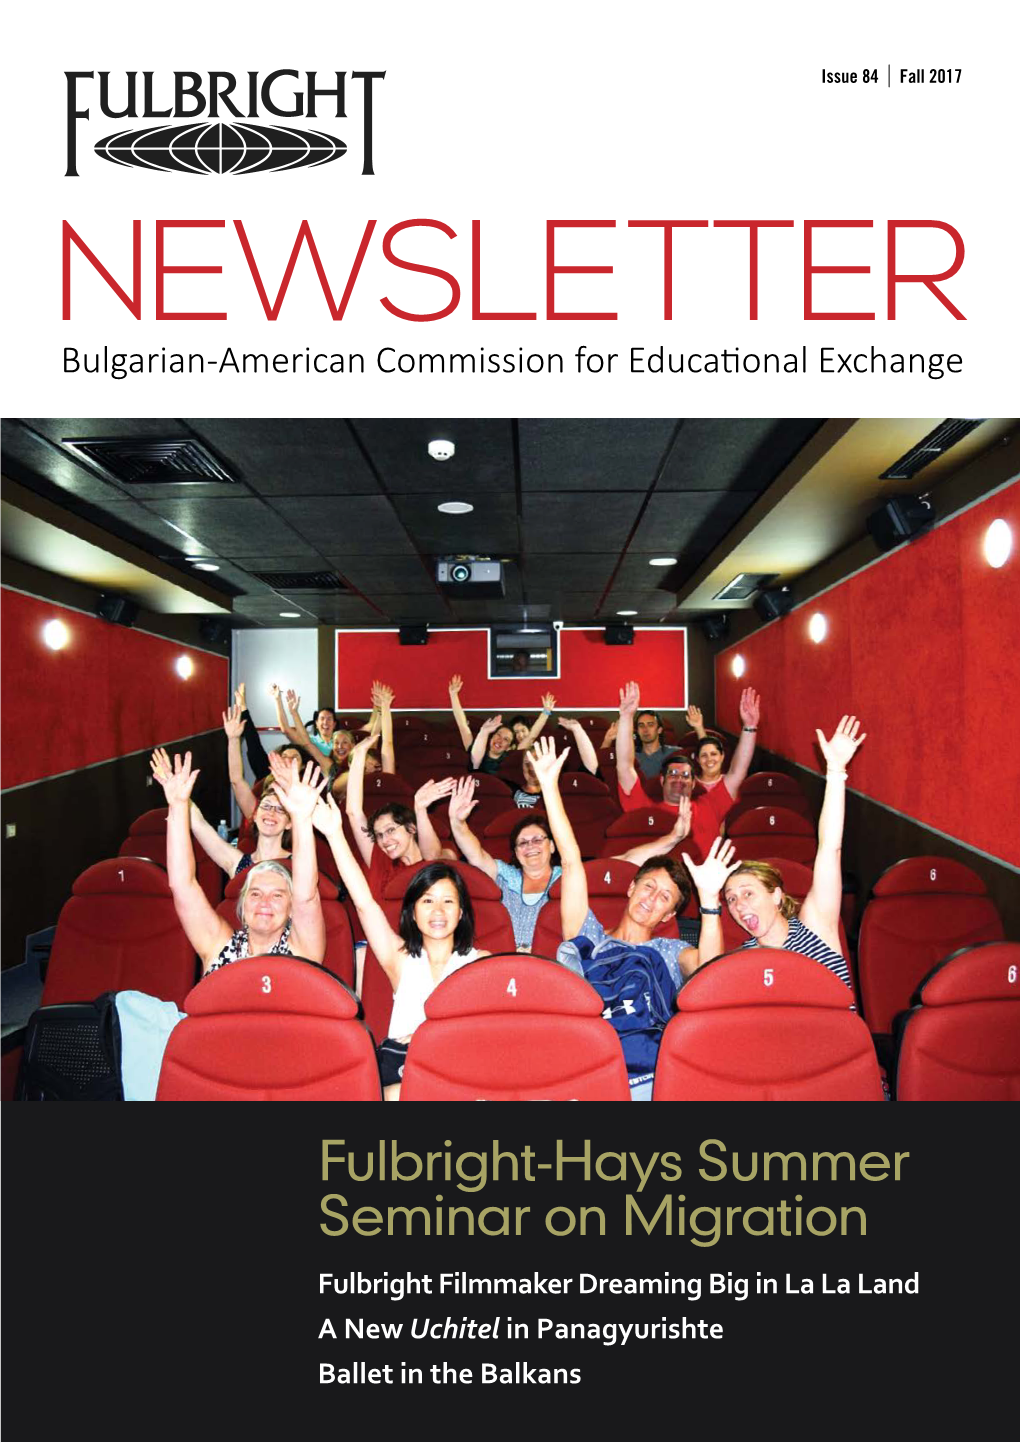 Fulbright-Hays Summer Seminar on Migration